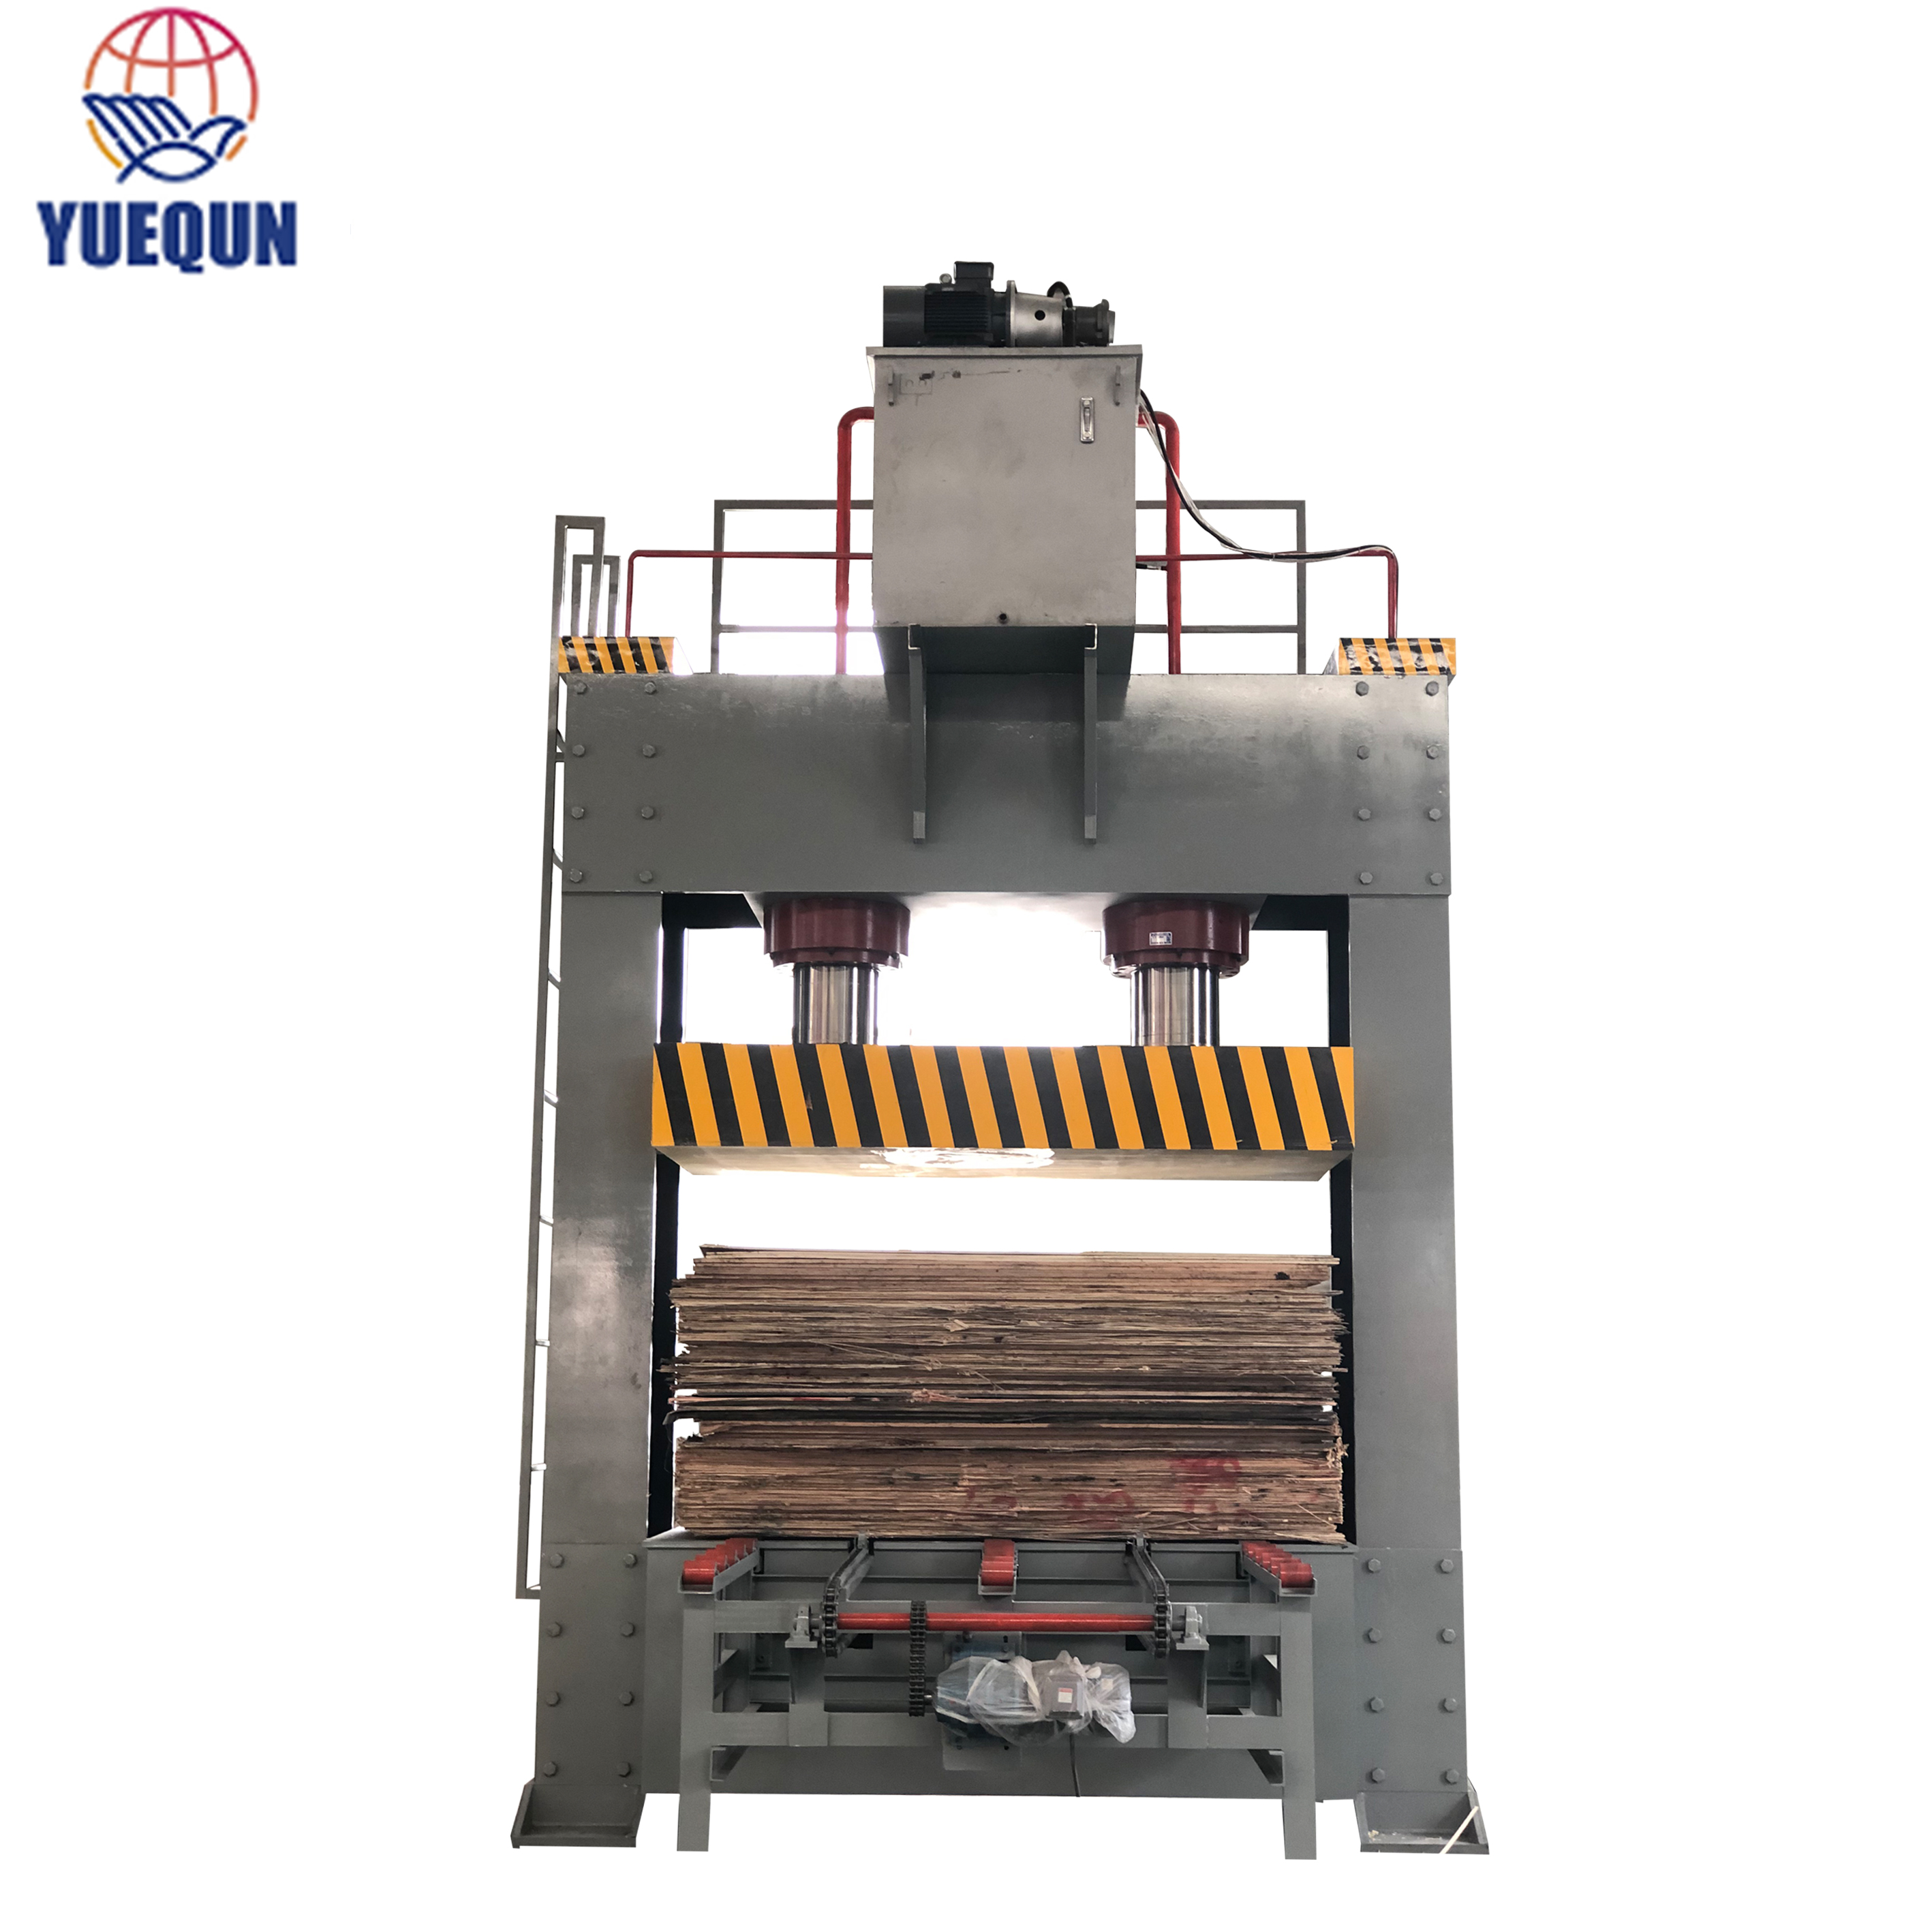 Venta de máquinas usadas de prensa en frío de madera tipos de máquinas de carpintería para la fabricación de madera contrachapada